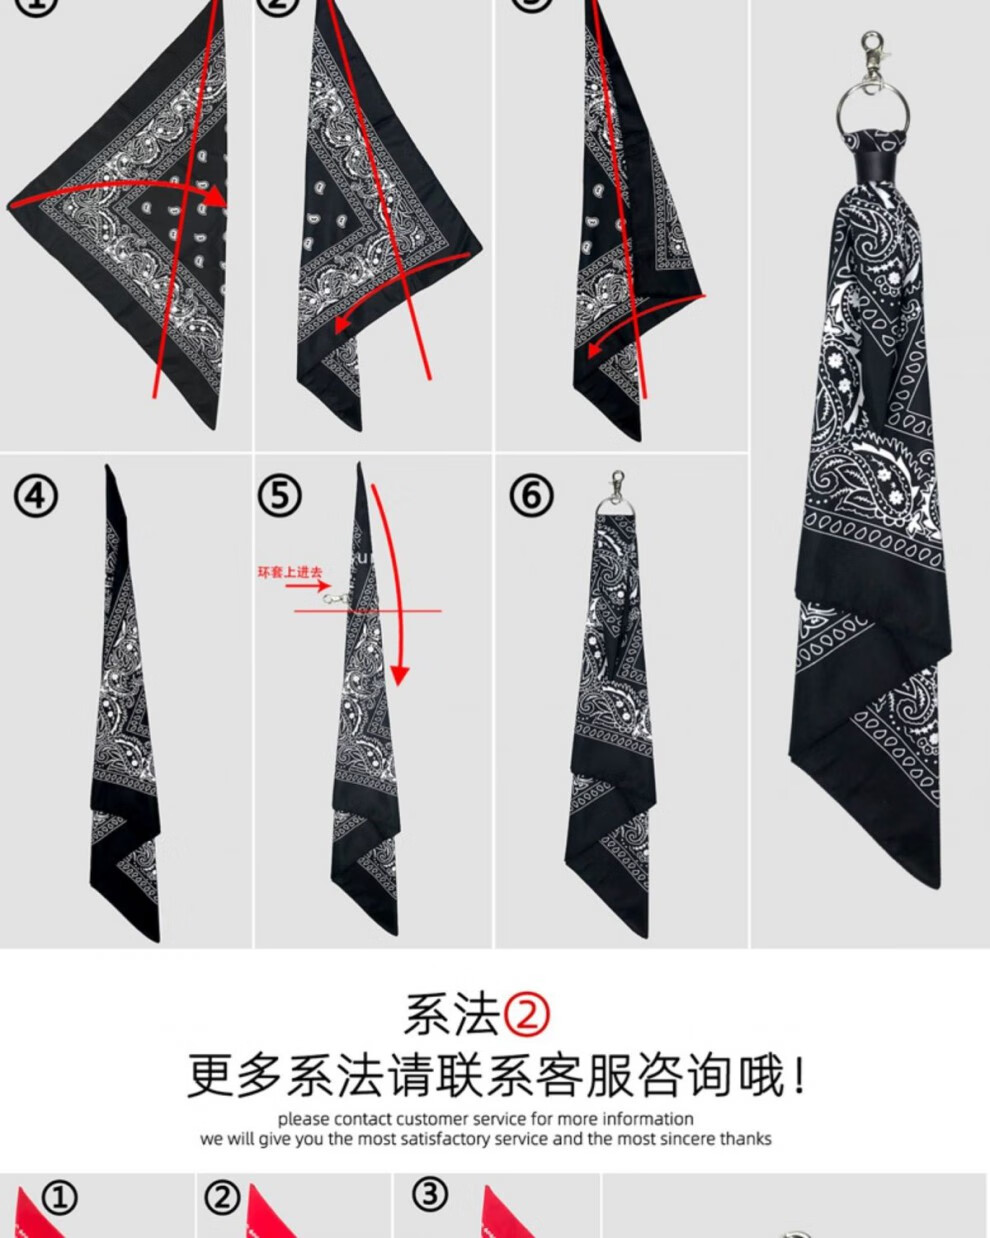 嘻哈裤巾折叠方法图片